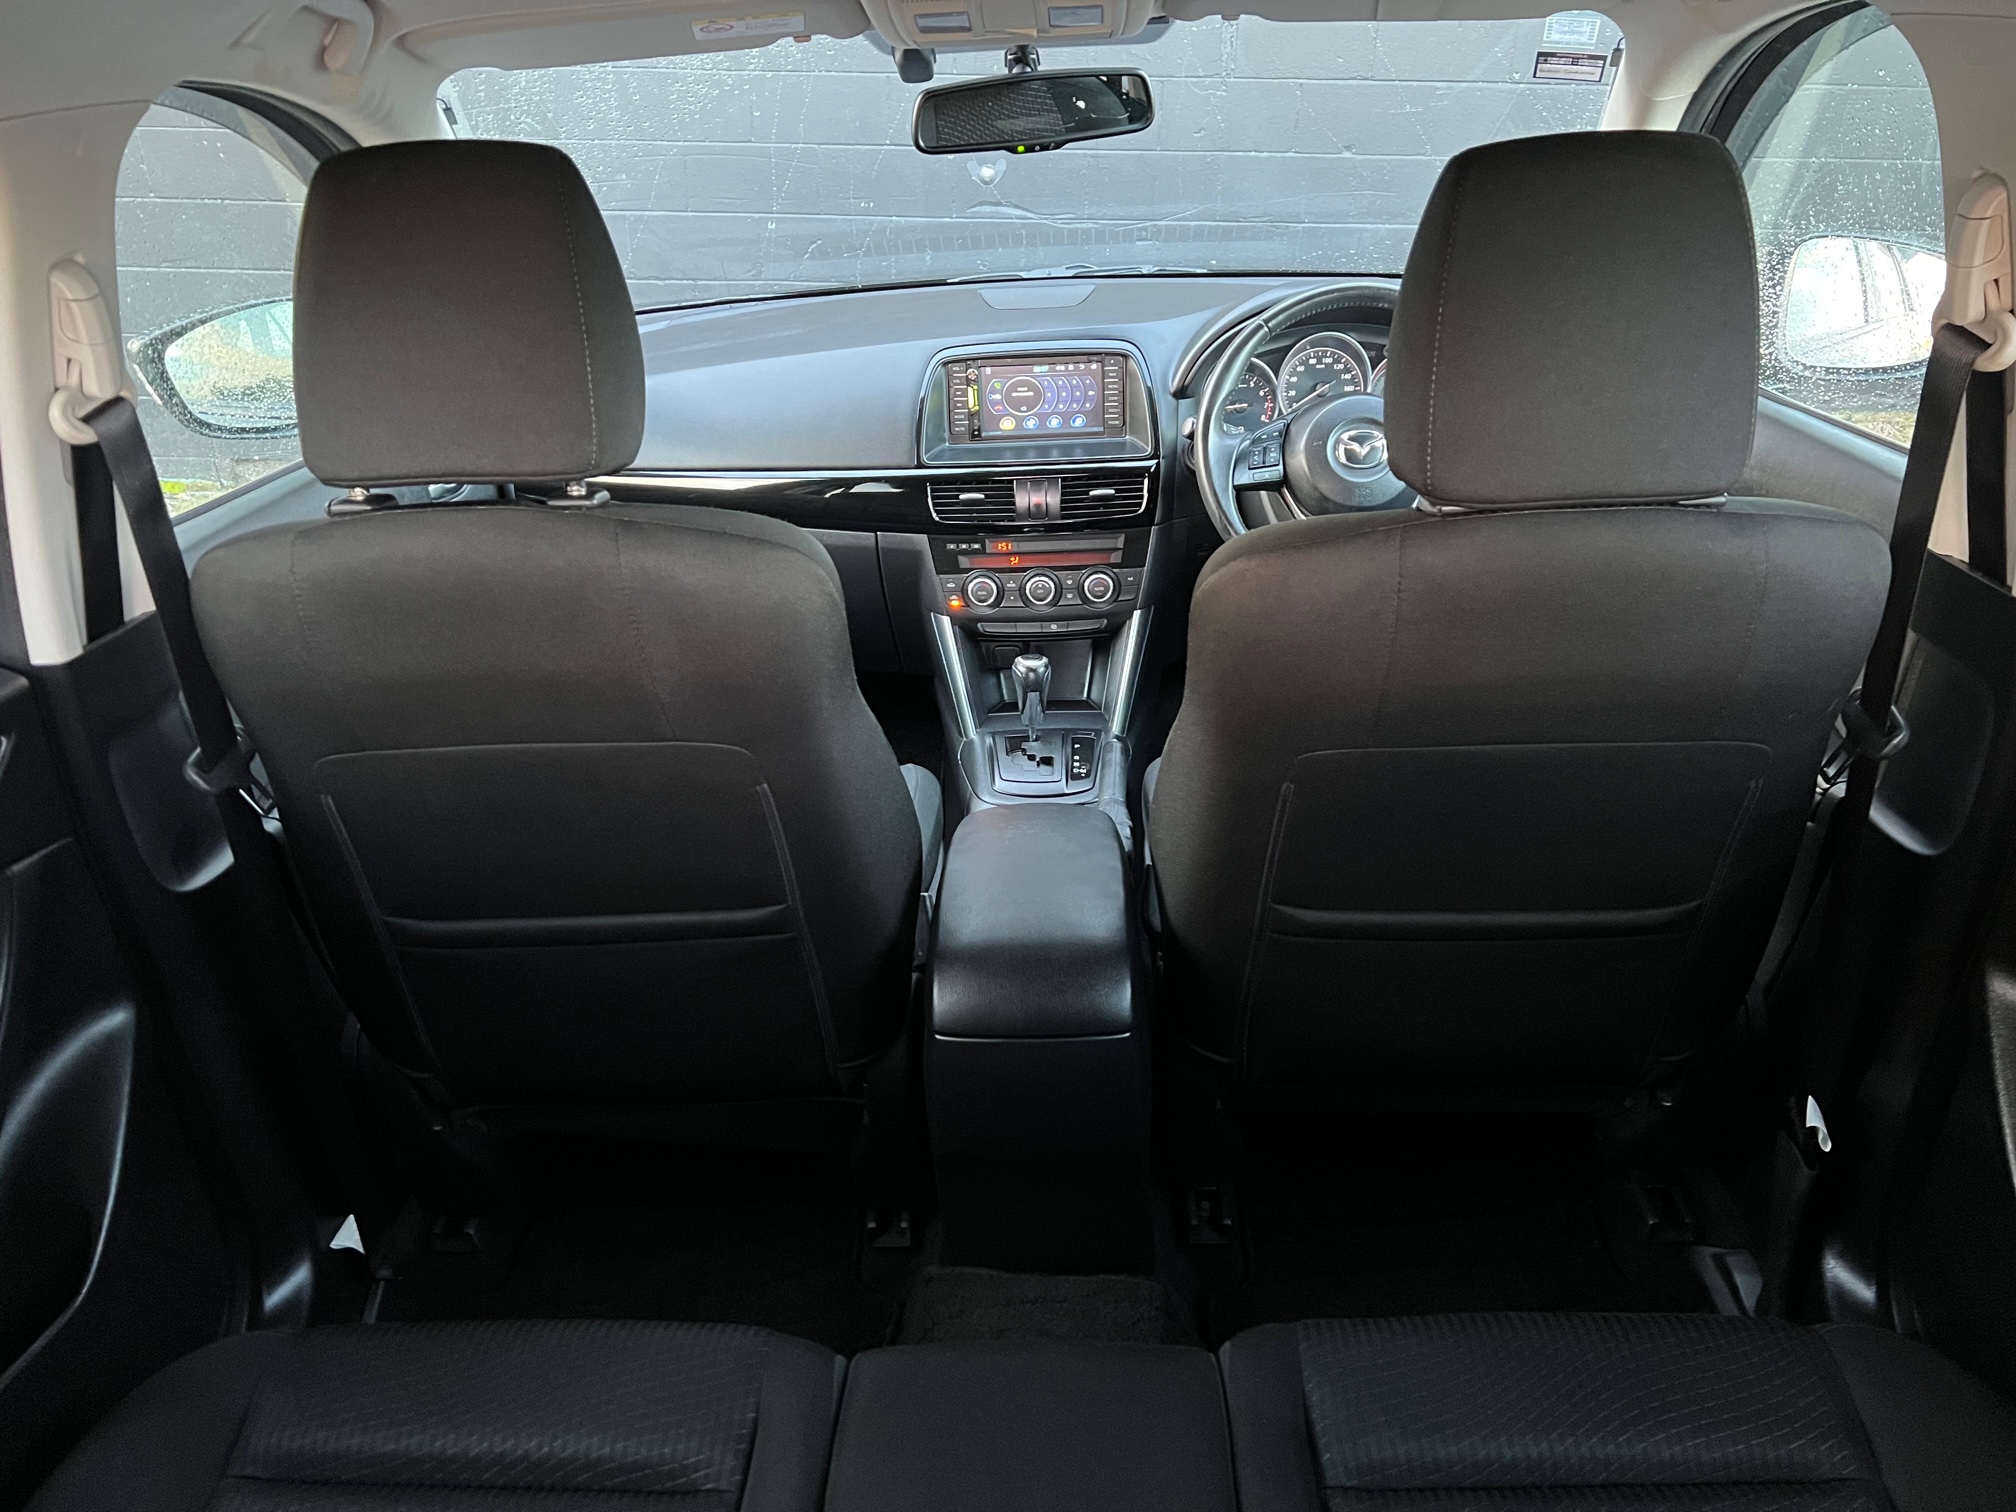 Mazda CX-5 2013 Image 13